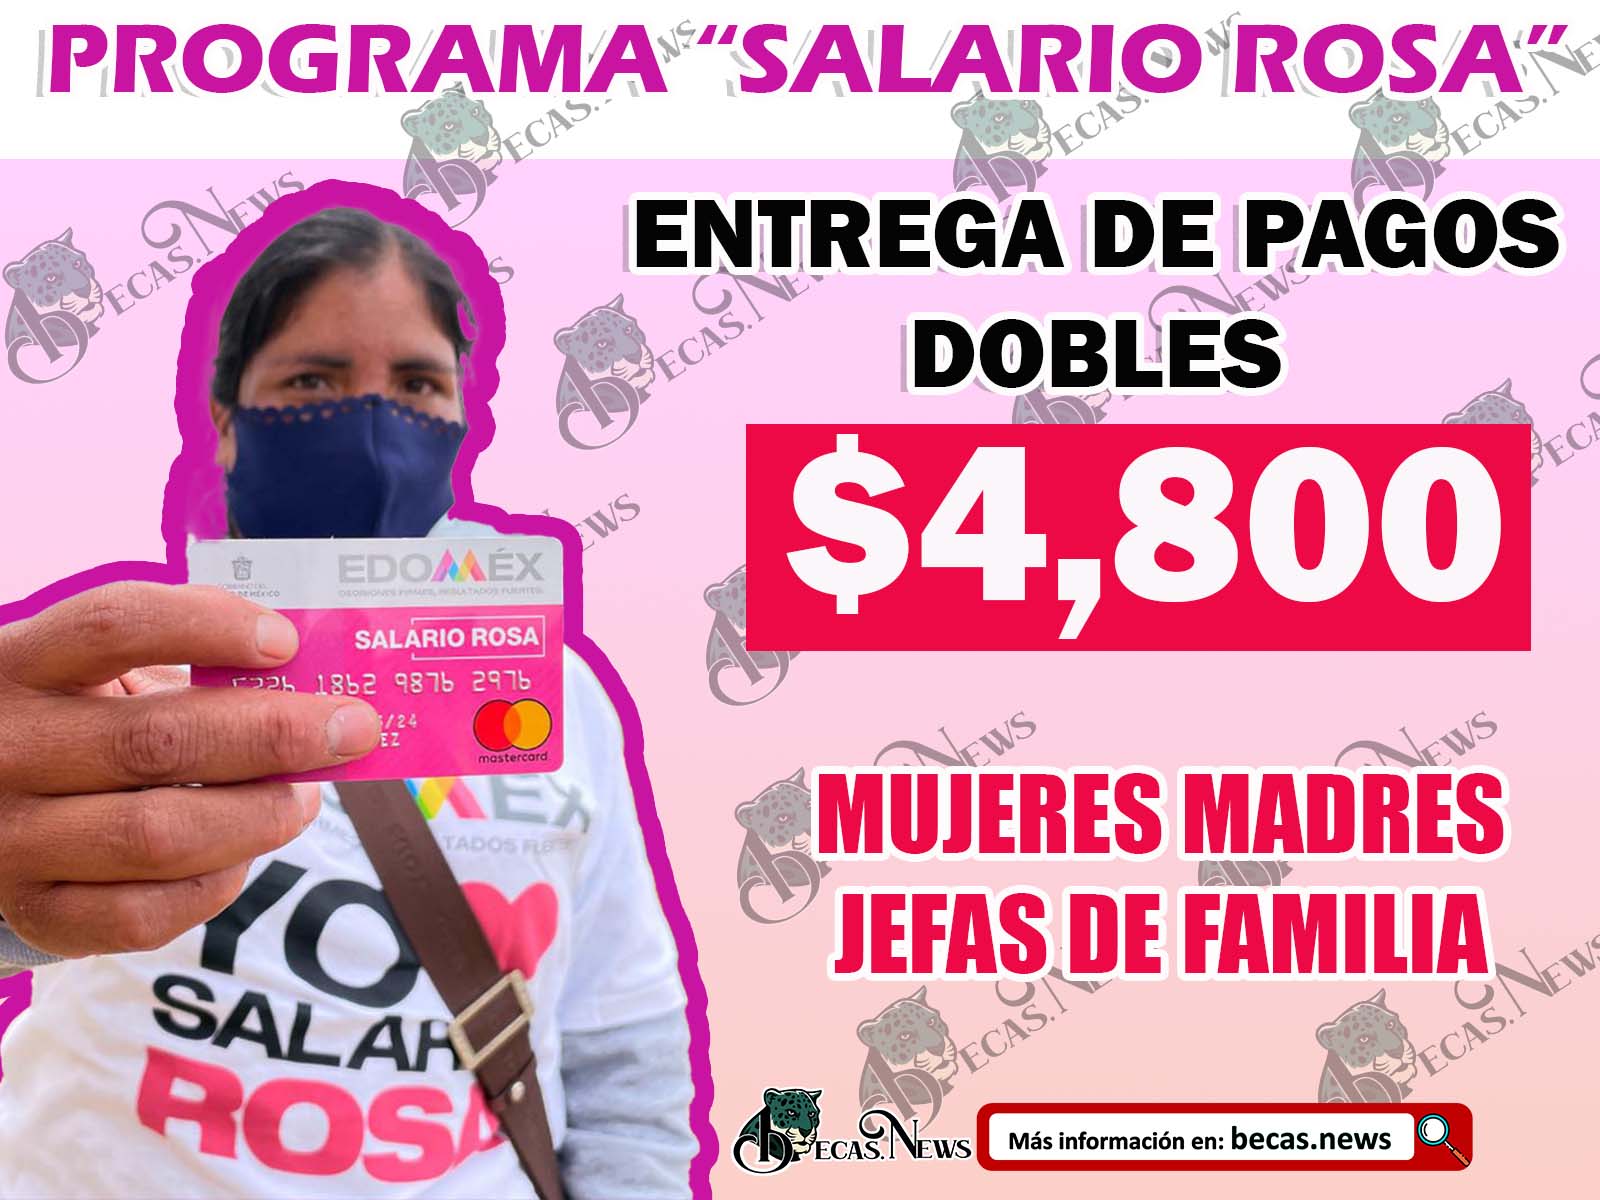 ¡EXCELENTES NOTICIAS! Habrá entregas Dobles del Salario Rosa para estas Beneficiarias $4,800